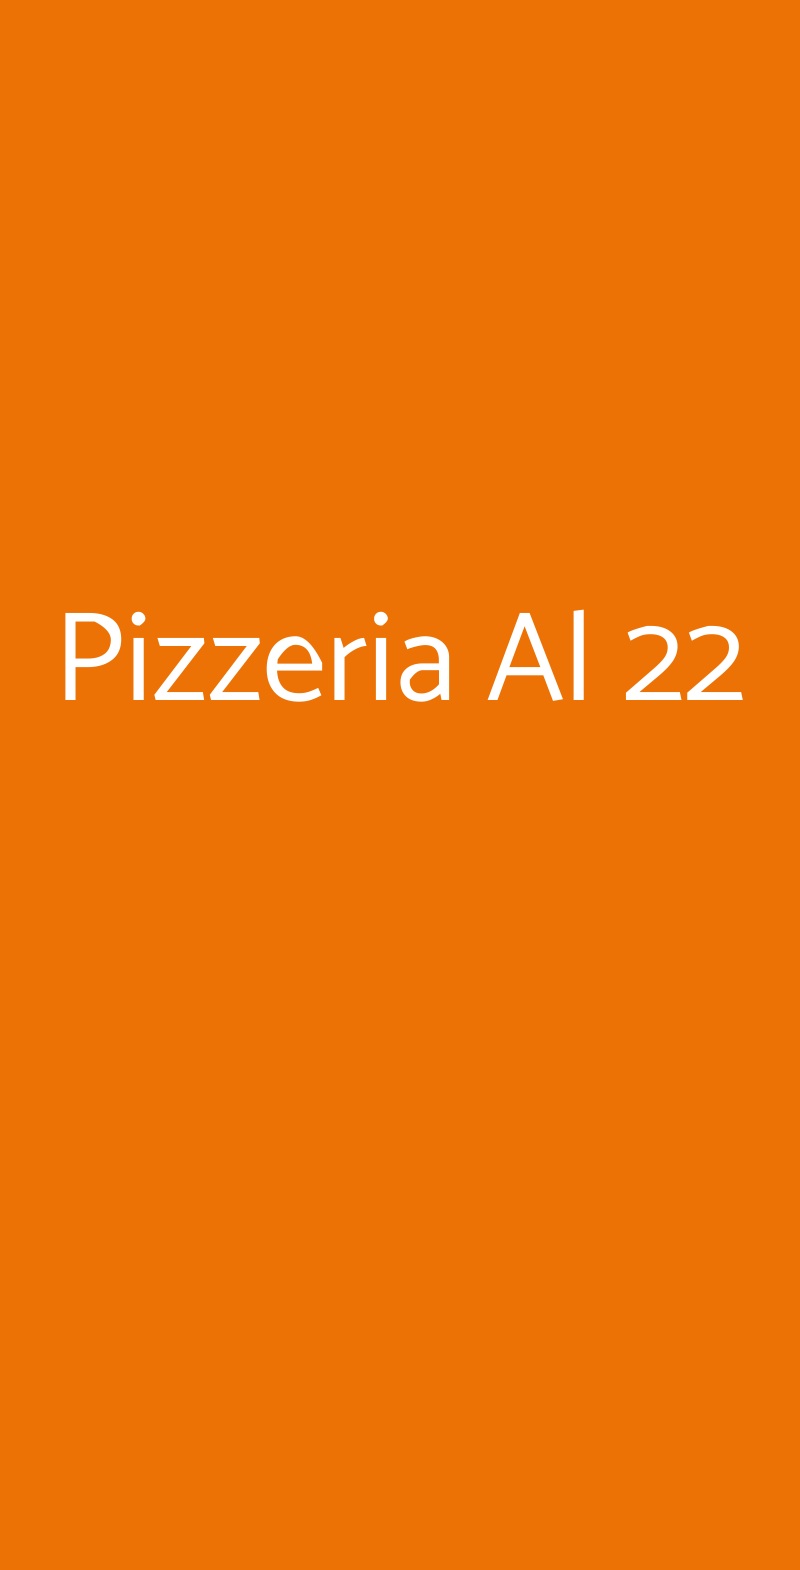 Pizzeria Al 22 Napoli menù 1 pagina